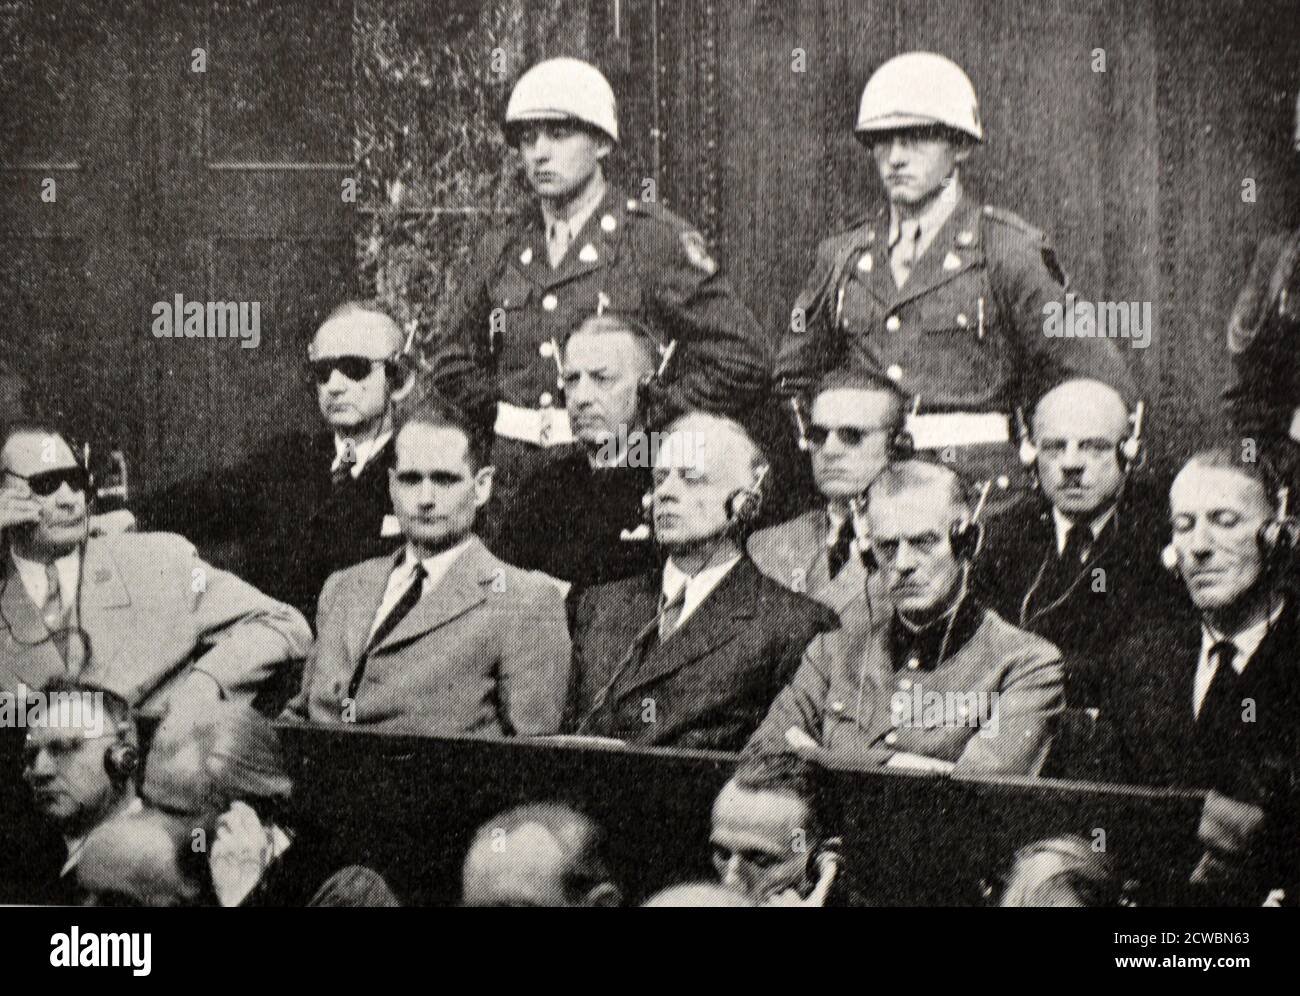 Schwarz-Weiß-Fotografie des Zweiten Weltkriegs (1939-1945) zeigt Bilder im Zusammenhang mit den Nürnberger Prozessen, der größten Staatsanwaltschaft der Geschichte, und die im November 1945 begann; eine Gruppe der Angeklagten warten auf den Prozess vor dem Gerichtshof: Göring, Hess, Ribbentrop, Keitel, Rosenberg, Doenitz, Raeder, Baldur von Schirach und Sauckel. Stockfoto